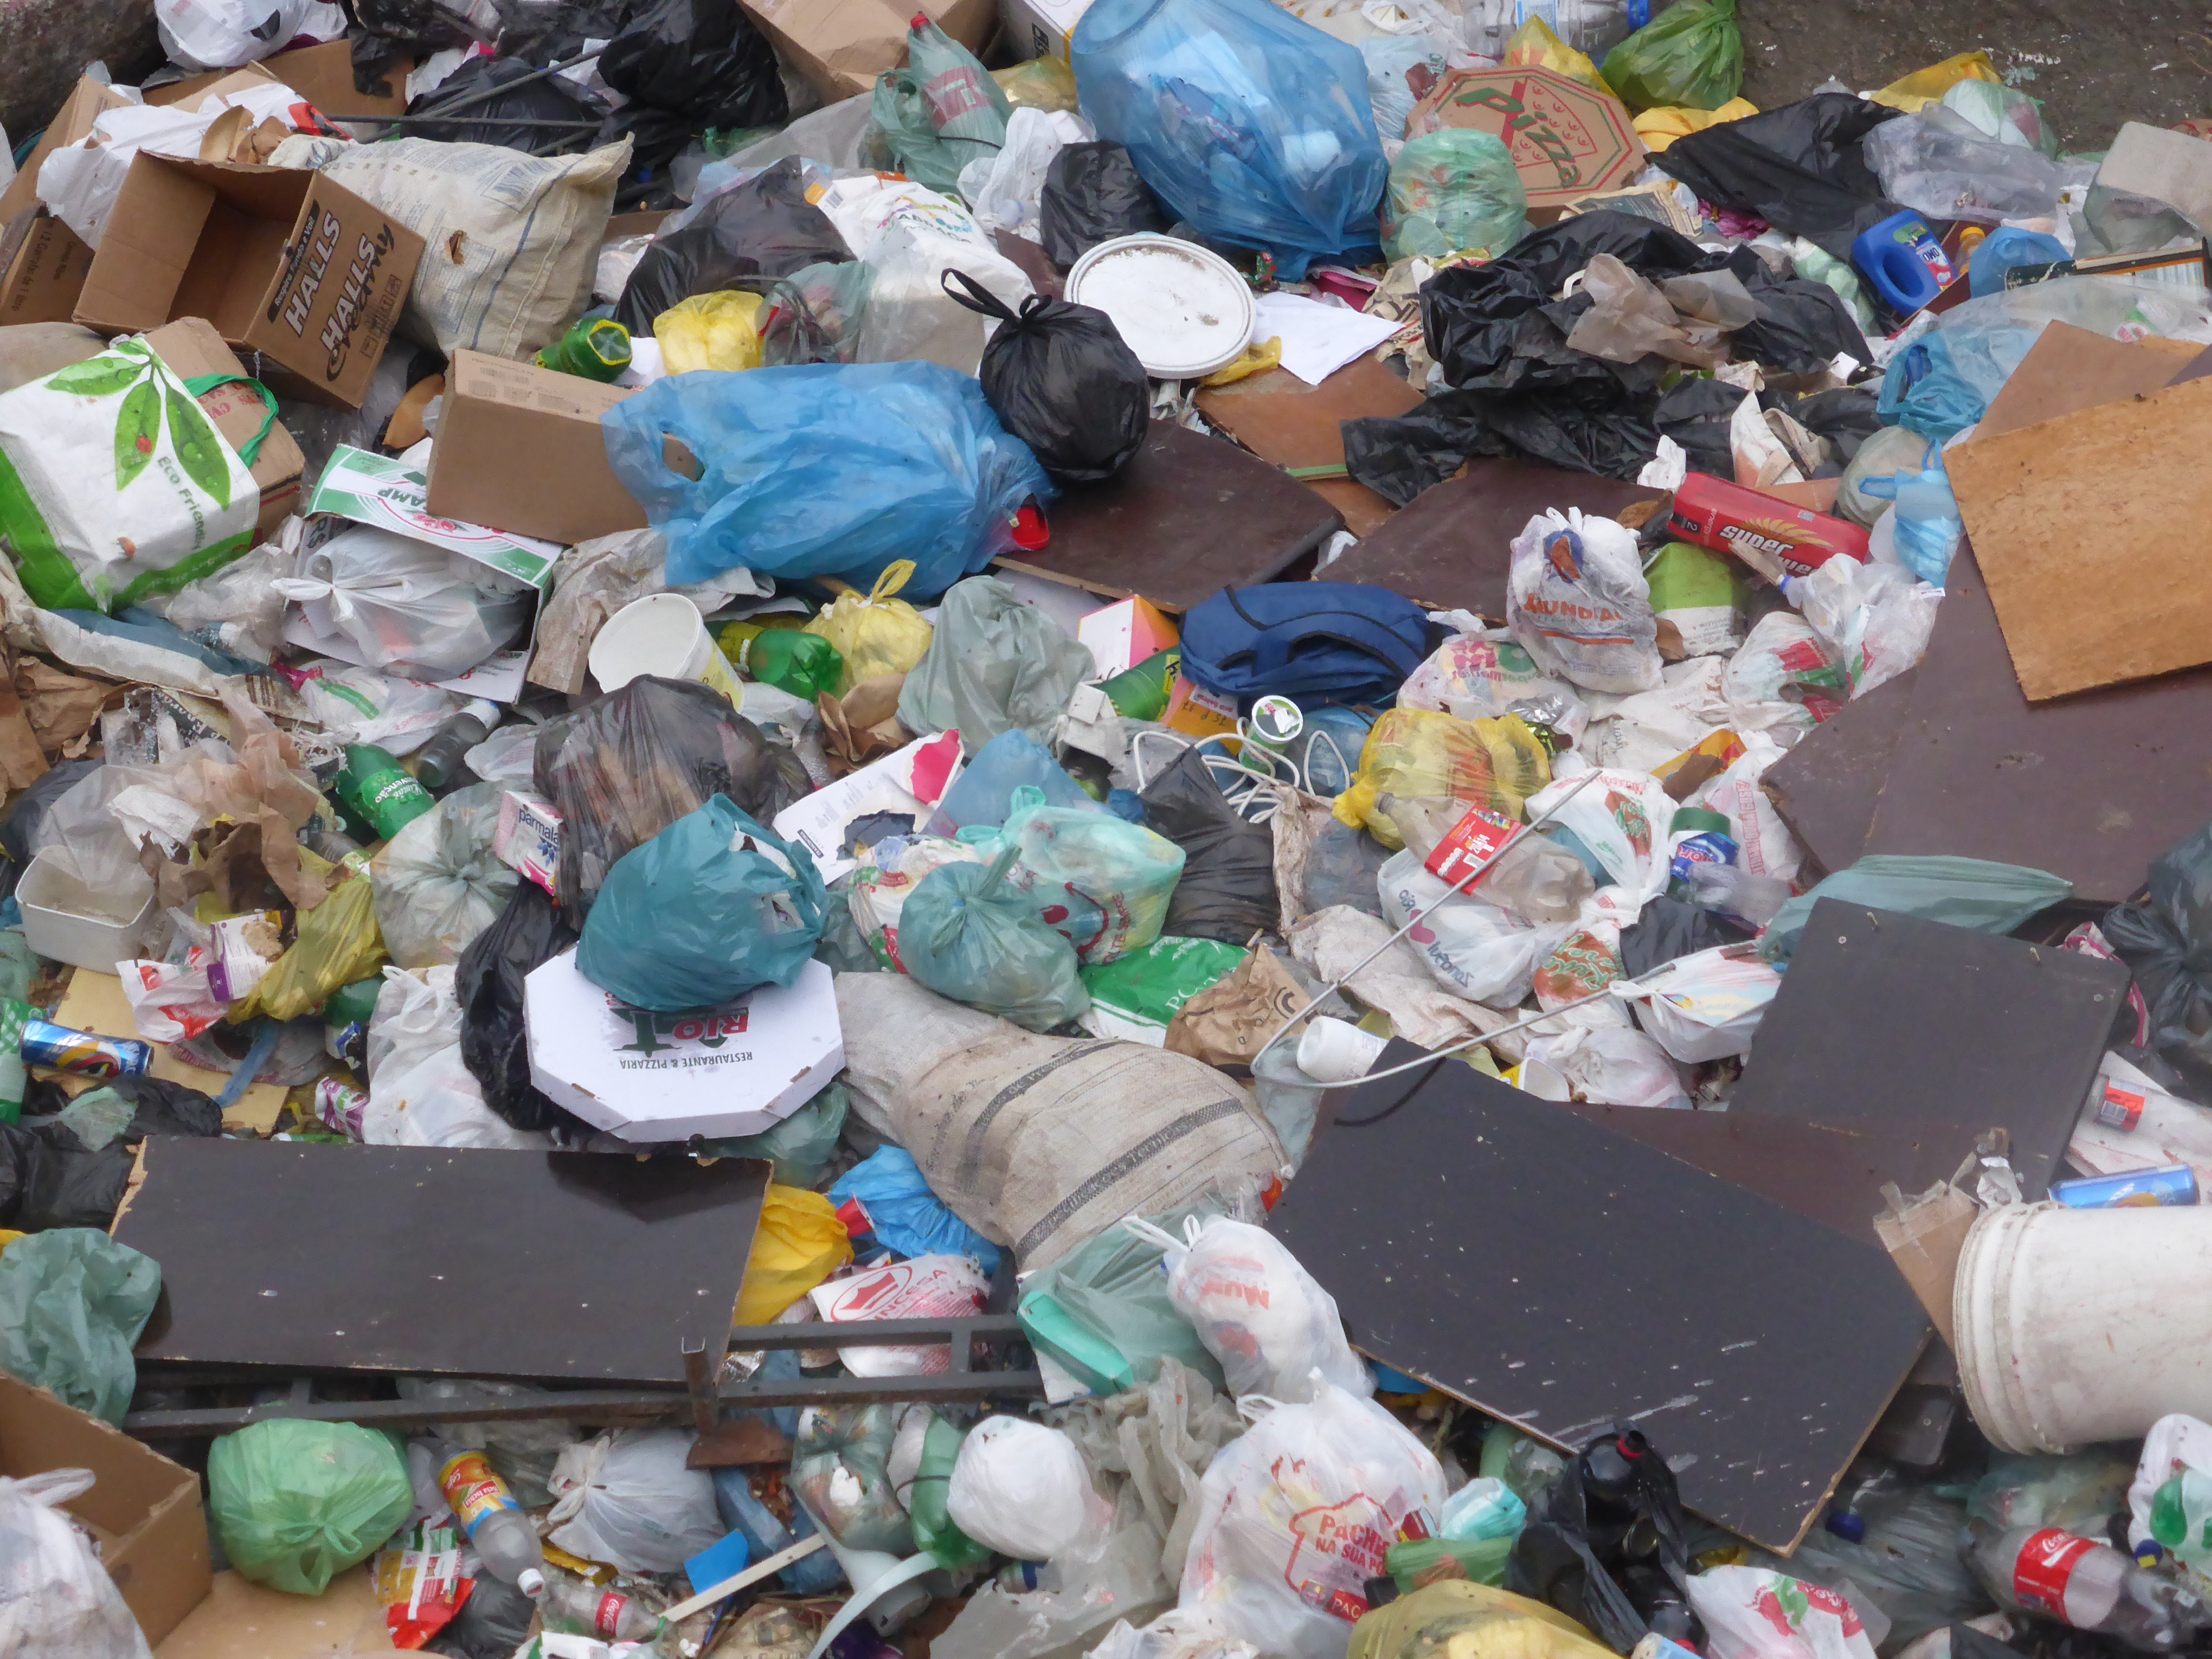 Staking van vuilnisophalers in Rio: vuil, vuiler, vuilst